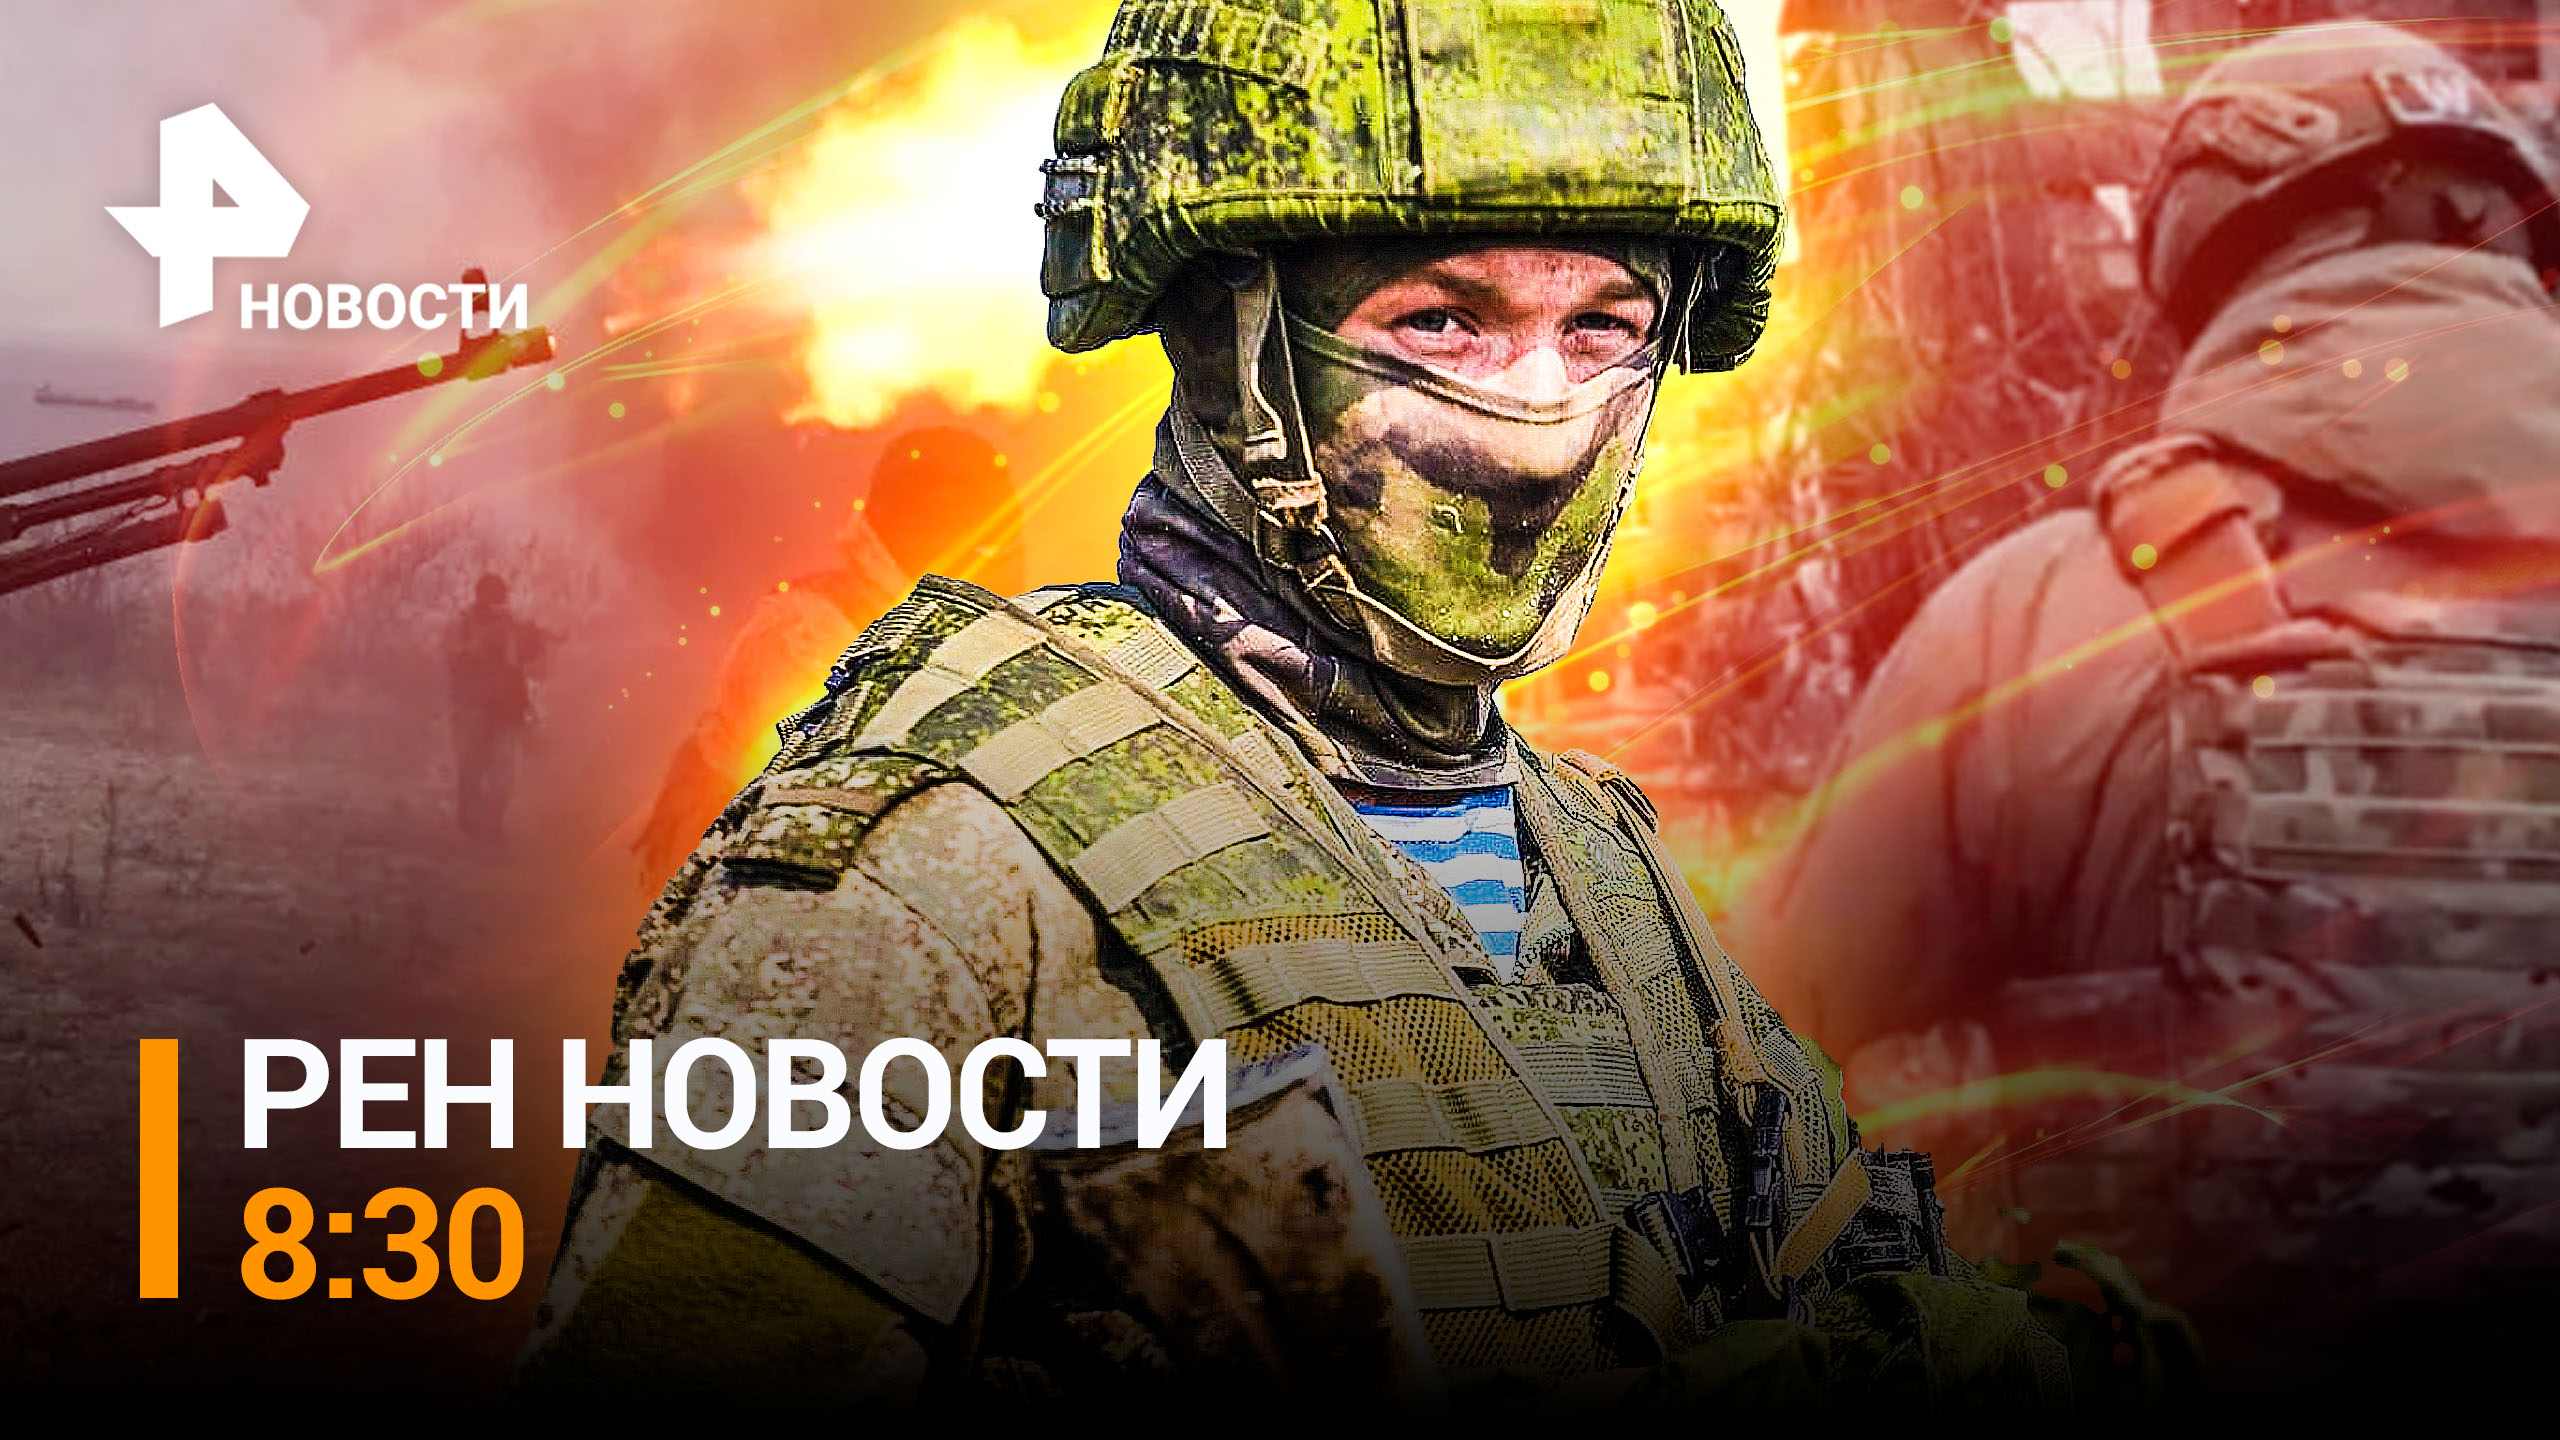 Российские войска вошли в Угледар и закрепились на окраинах города / РЕН ТВ НОВОСТИ 8:30 от 26.01.23